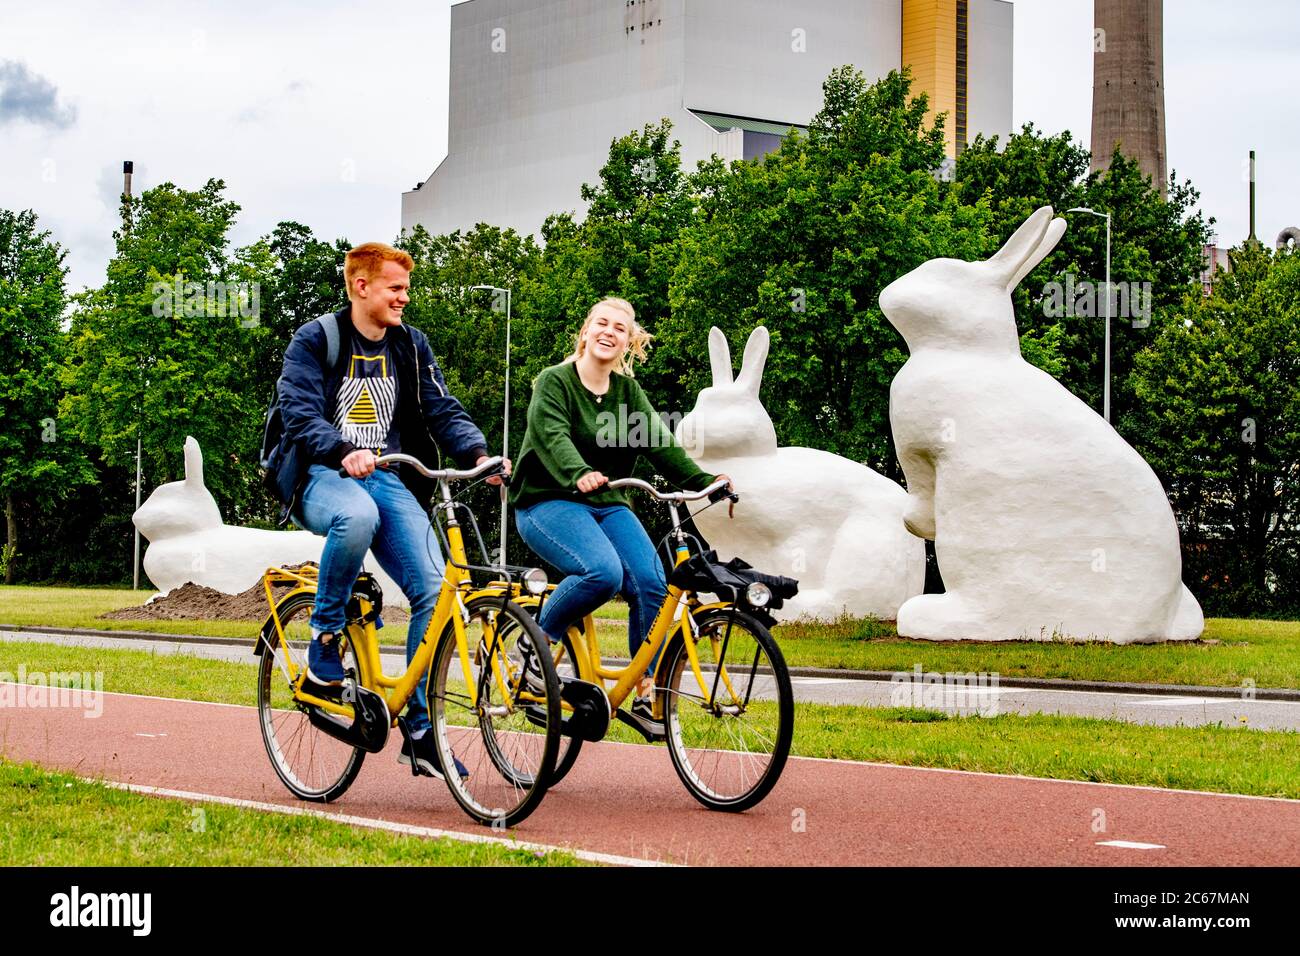 Radler fahren an den drei riesigen Kaninchenstatuen (Berm Bunnies) vorbei und bilden einen Blickfang auf der Schnellradroute von Amsterdam nach Zaanstad im Hafengebiet von Amsterdam. Stockfoto